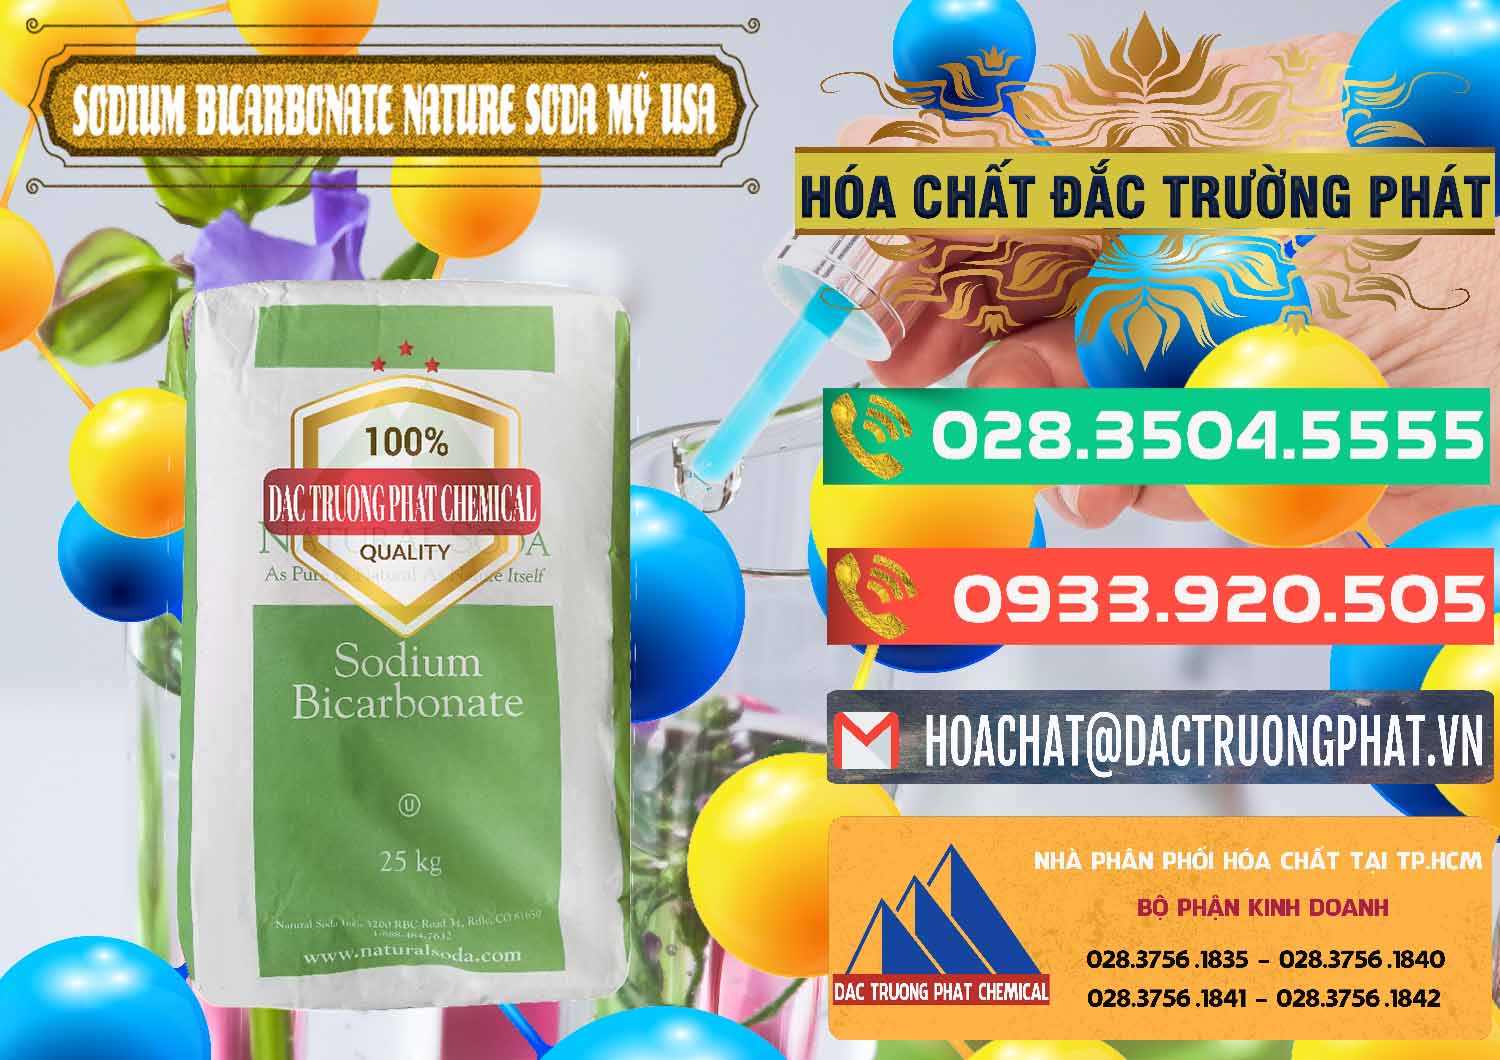 Nơi chuyên bán và phân phối Sodium Bicarbonate – Bicar NaHCO3 Food Grade Nature Soda Mỹ USA - 0256 - Đơn vị bán _ phân phối hóa chất tại TP.HCM - congtyhoachat.com.vn